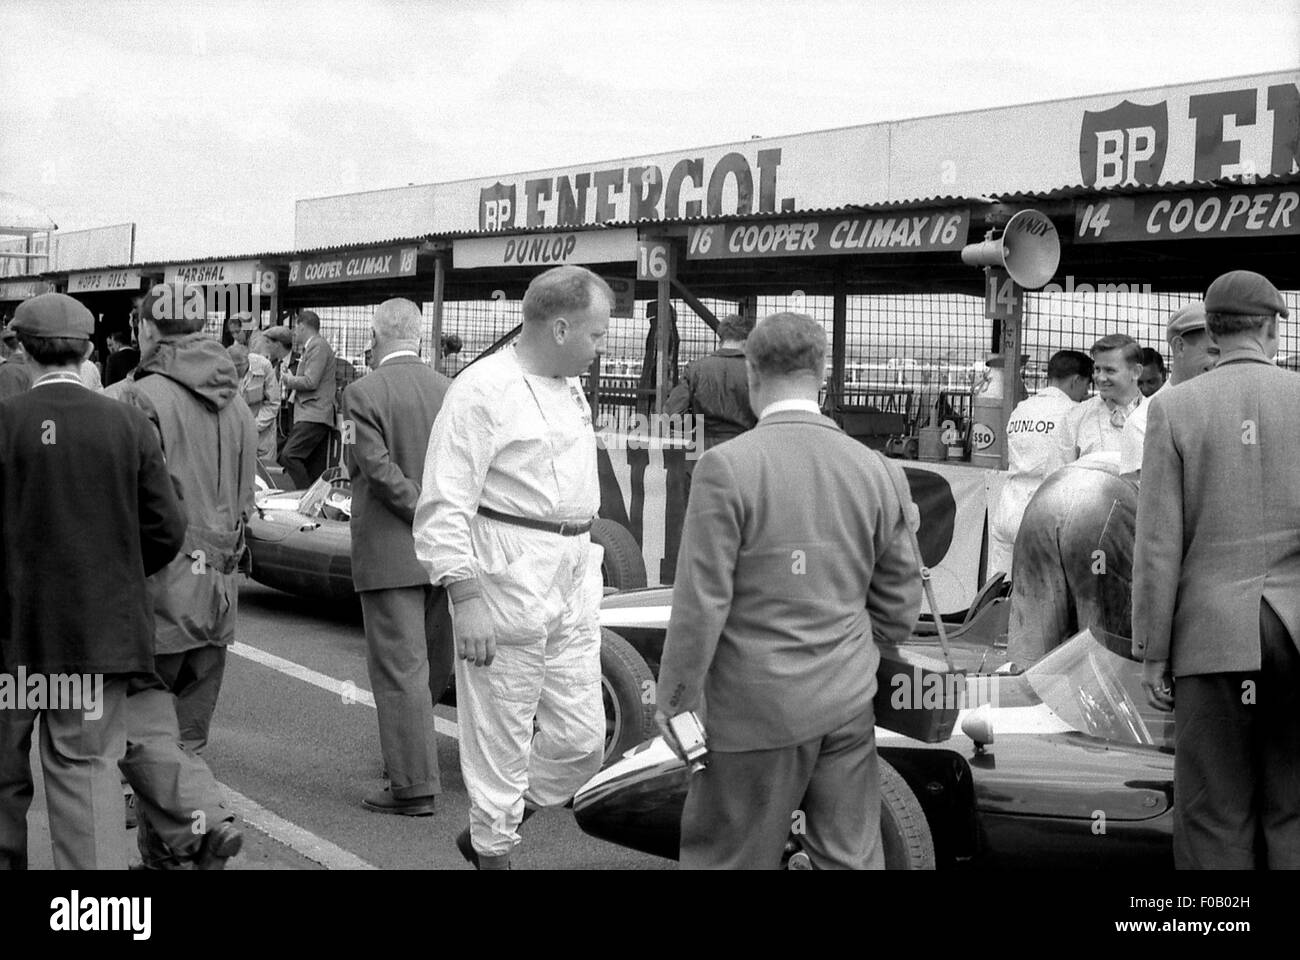 Le gingembre DEVLIN BRUCE McLAREN COOPER 18 juillet 1959 de l'équipe British GP Aintree. Banque D'Images